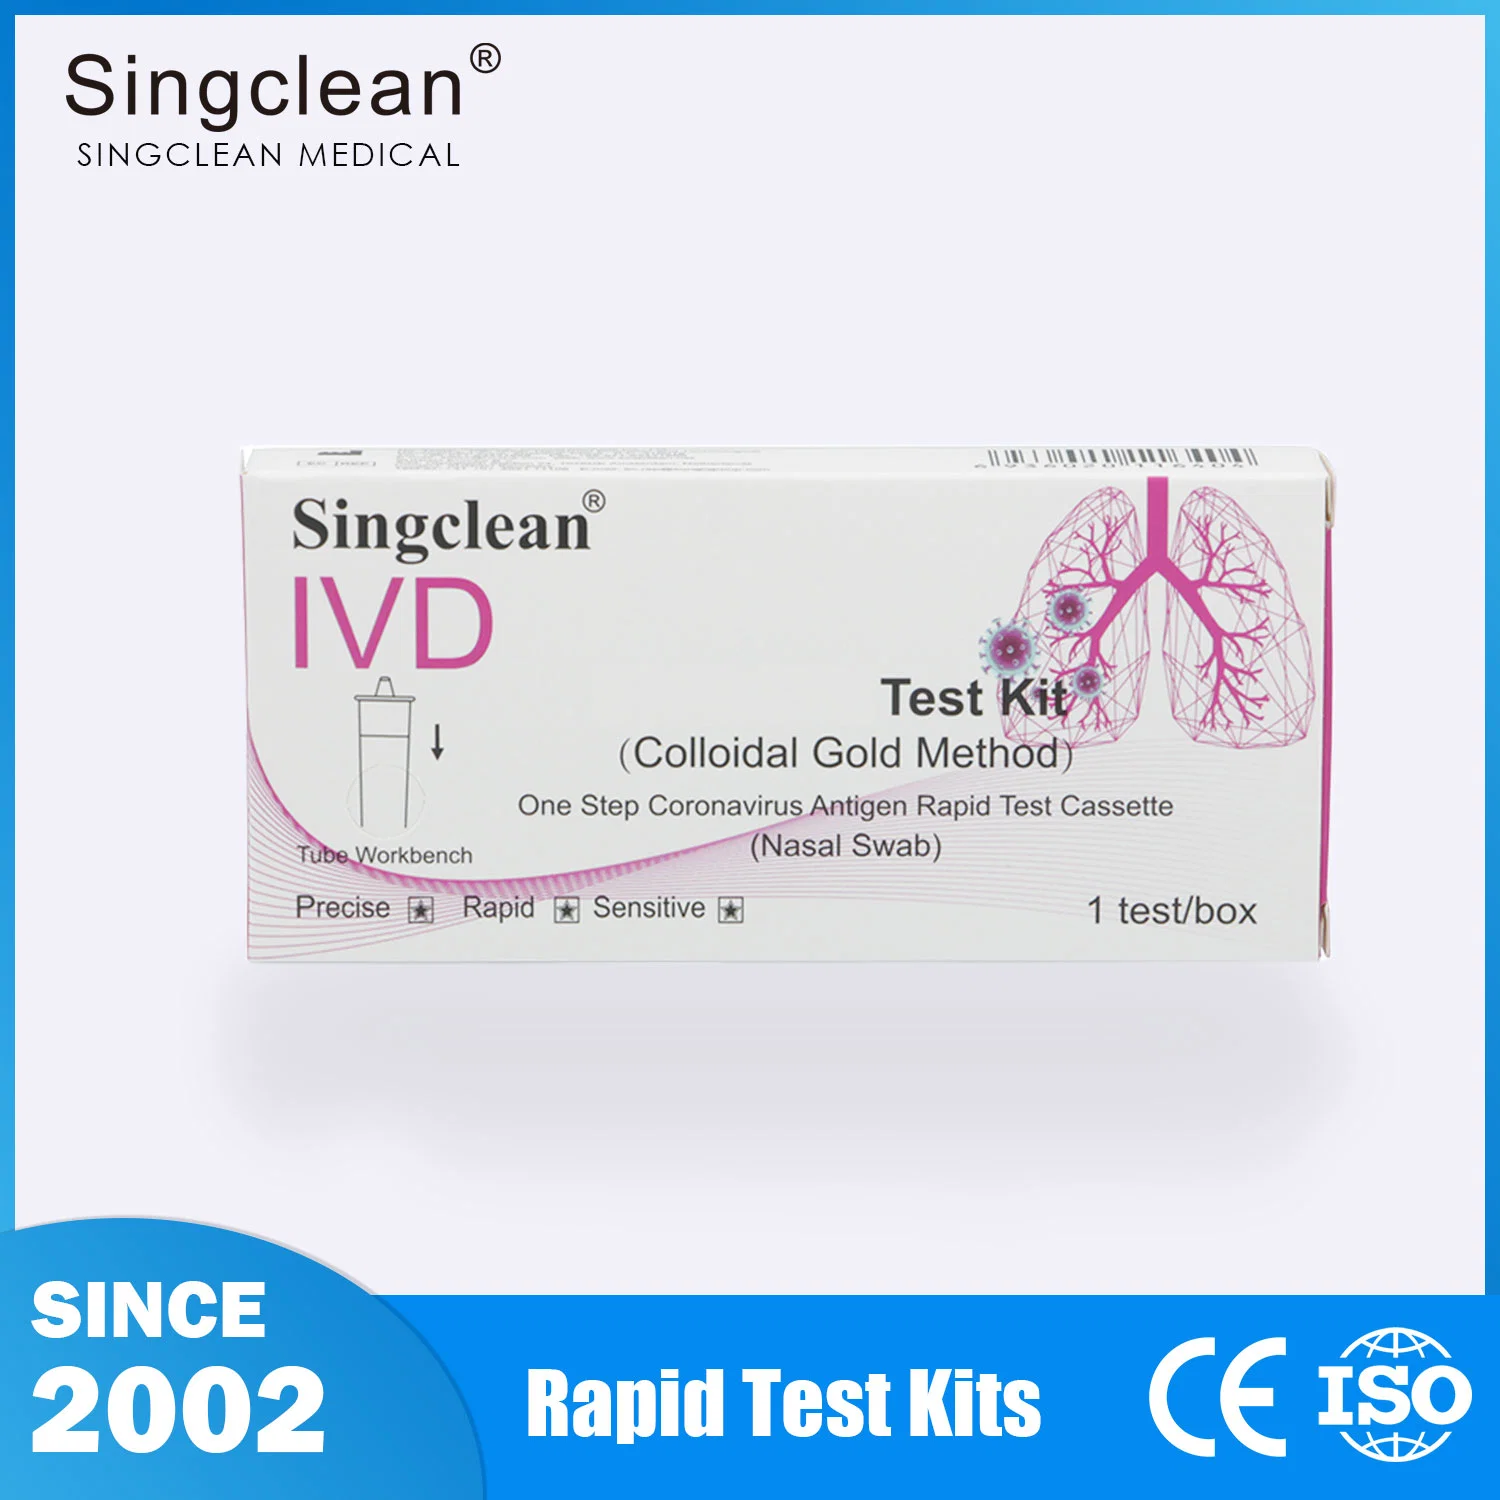 Singclean Ivd оптовая продажа медицинских товаровЭкспресс диагностика на антигенТест на овуляцию, тест с анализом мочи на наркотики, ВИЧ, беременностьНабор полосок (метод коллоидного золота)